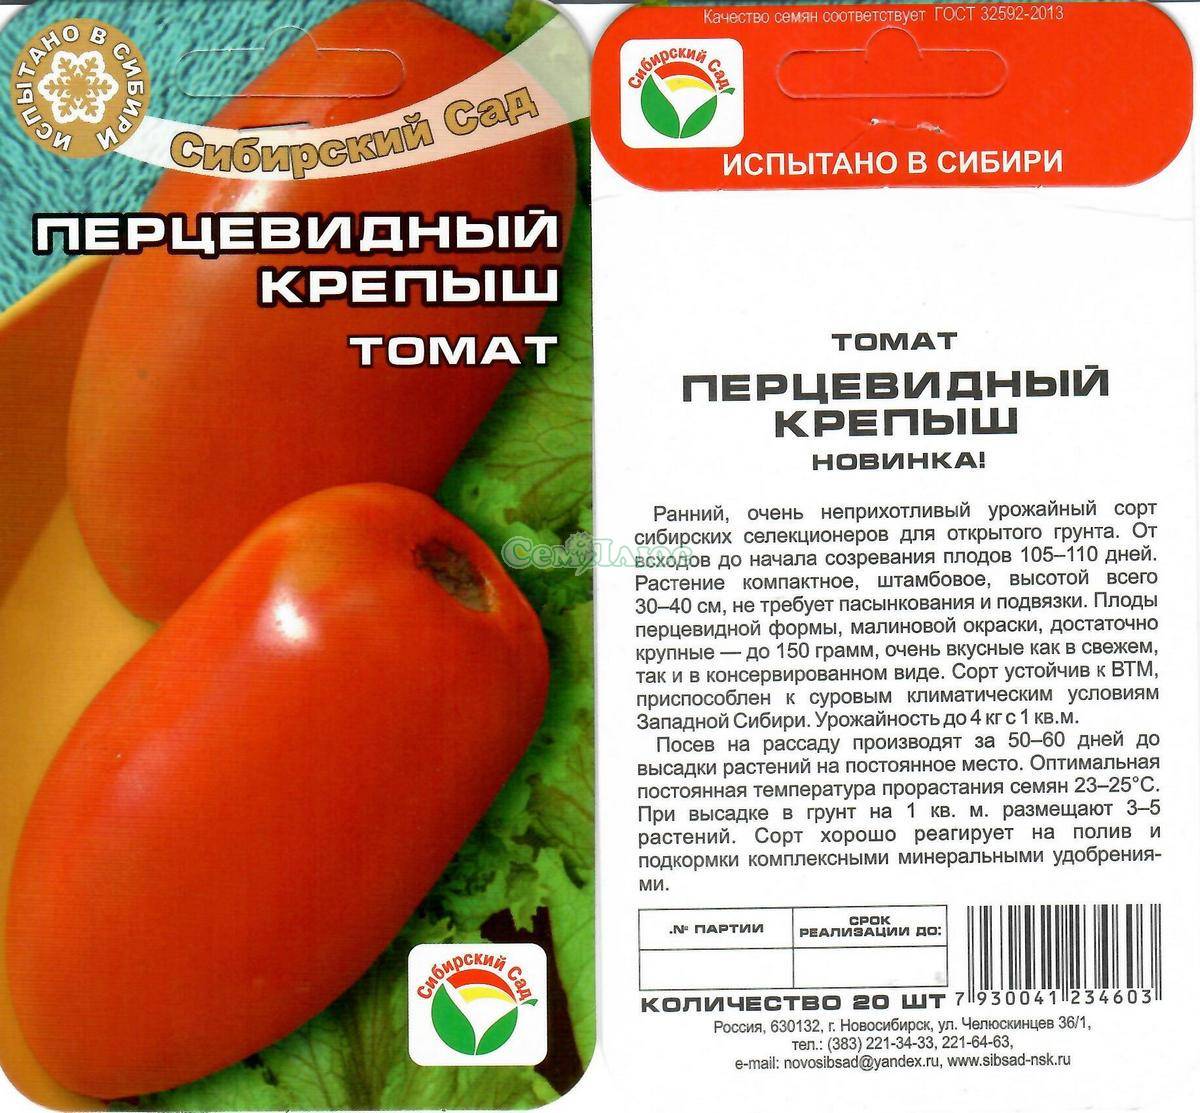 Томат «перцевидный» - отзывы о сорте, фото помидоров, характеристики и описание